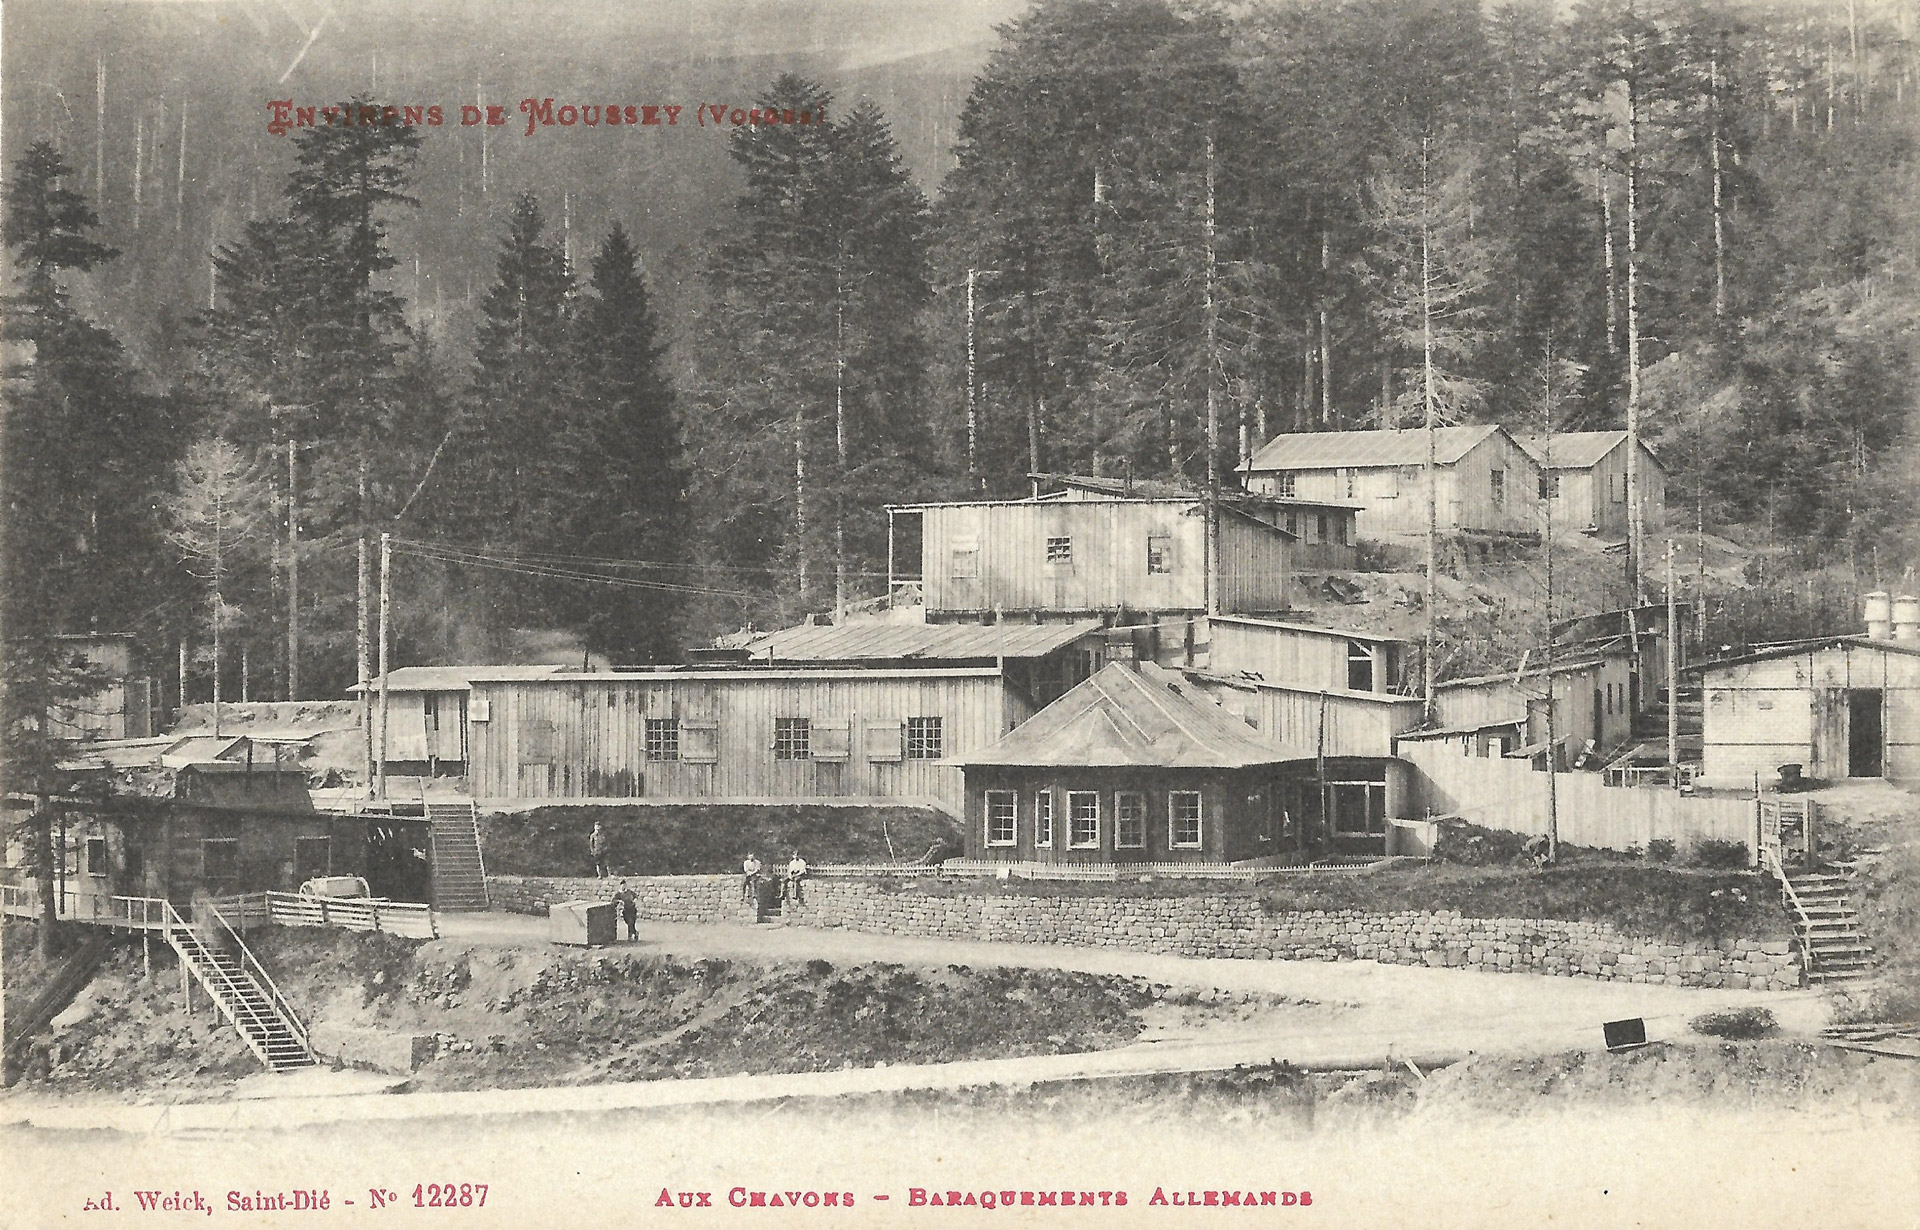 Vue sur les baraquements du camp forestier des Chavons, près de Moussey │ Carte postale non circulée │ col. pdgit1918